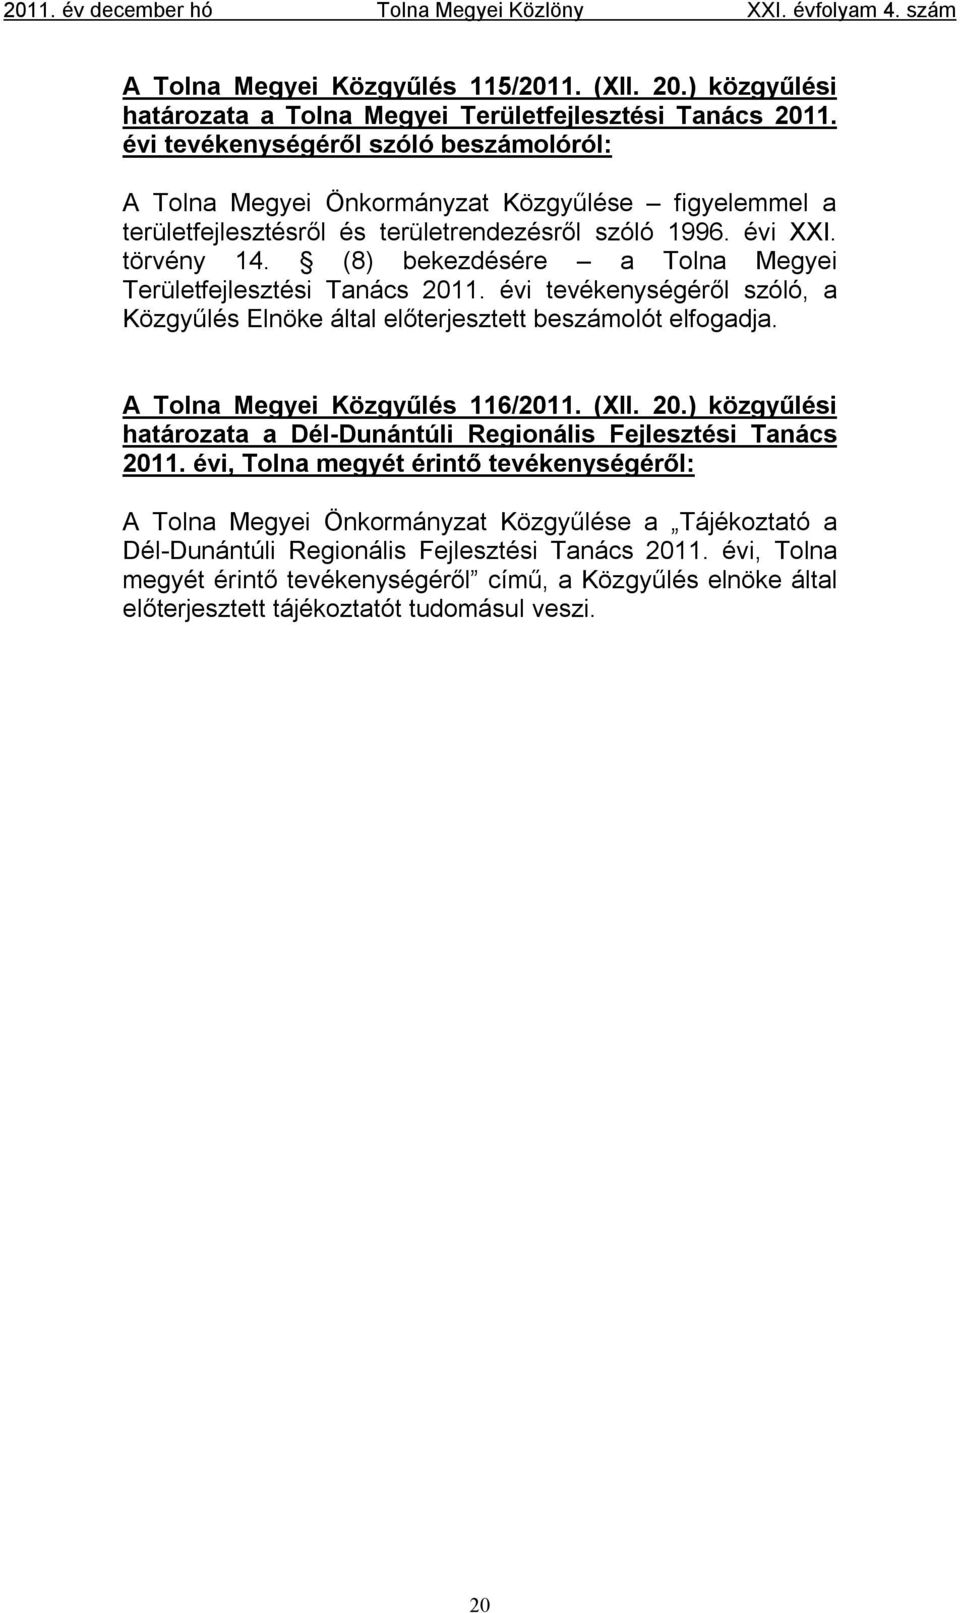 (8) bekezdésére a Tolna Megyei Területfejlesztési Tanács 2011. évi tevékenységéről szóló, a Közgyűlés Elnöke által előterjesztett beszámolót elfogadja. A Tolna Megyei Közgyűlés 116/2011. (XII. 20.) közgyűlési határozata a Dél-Dunántúli Regionális Fejlesztési Tanács 2011.